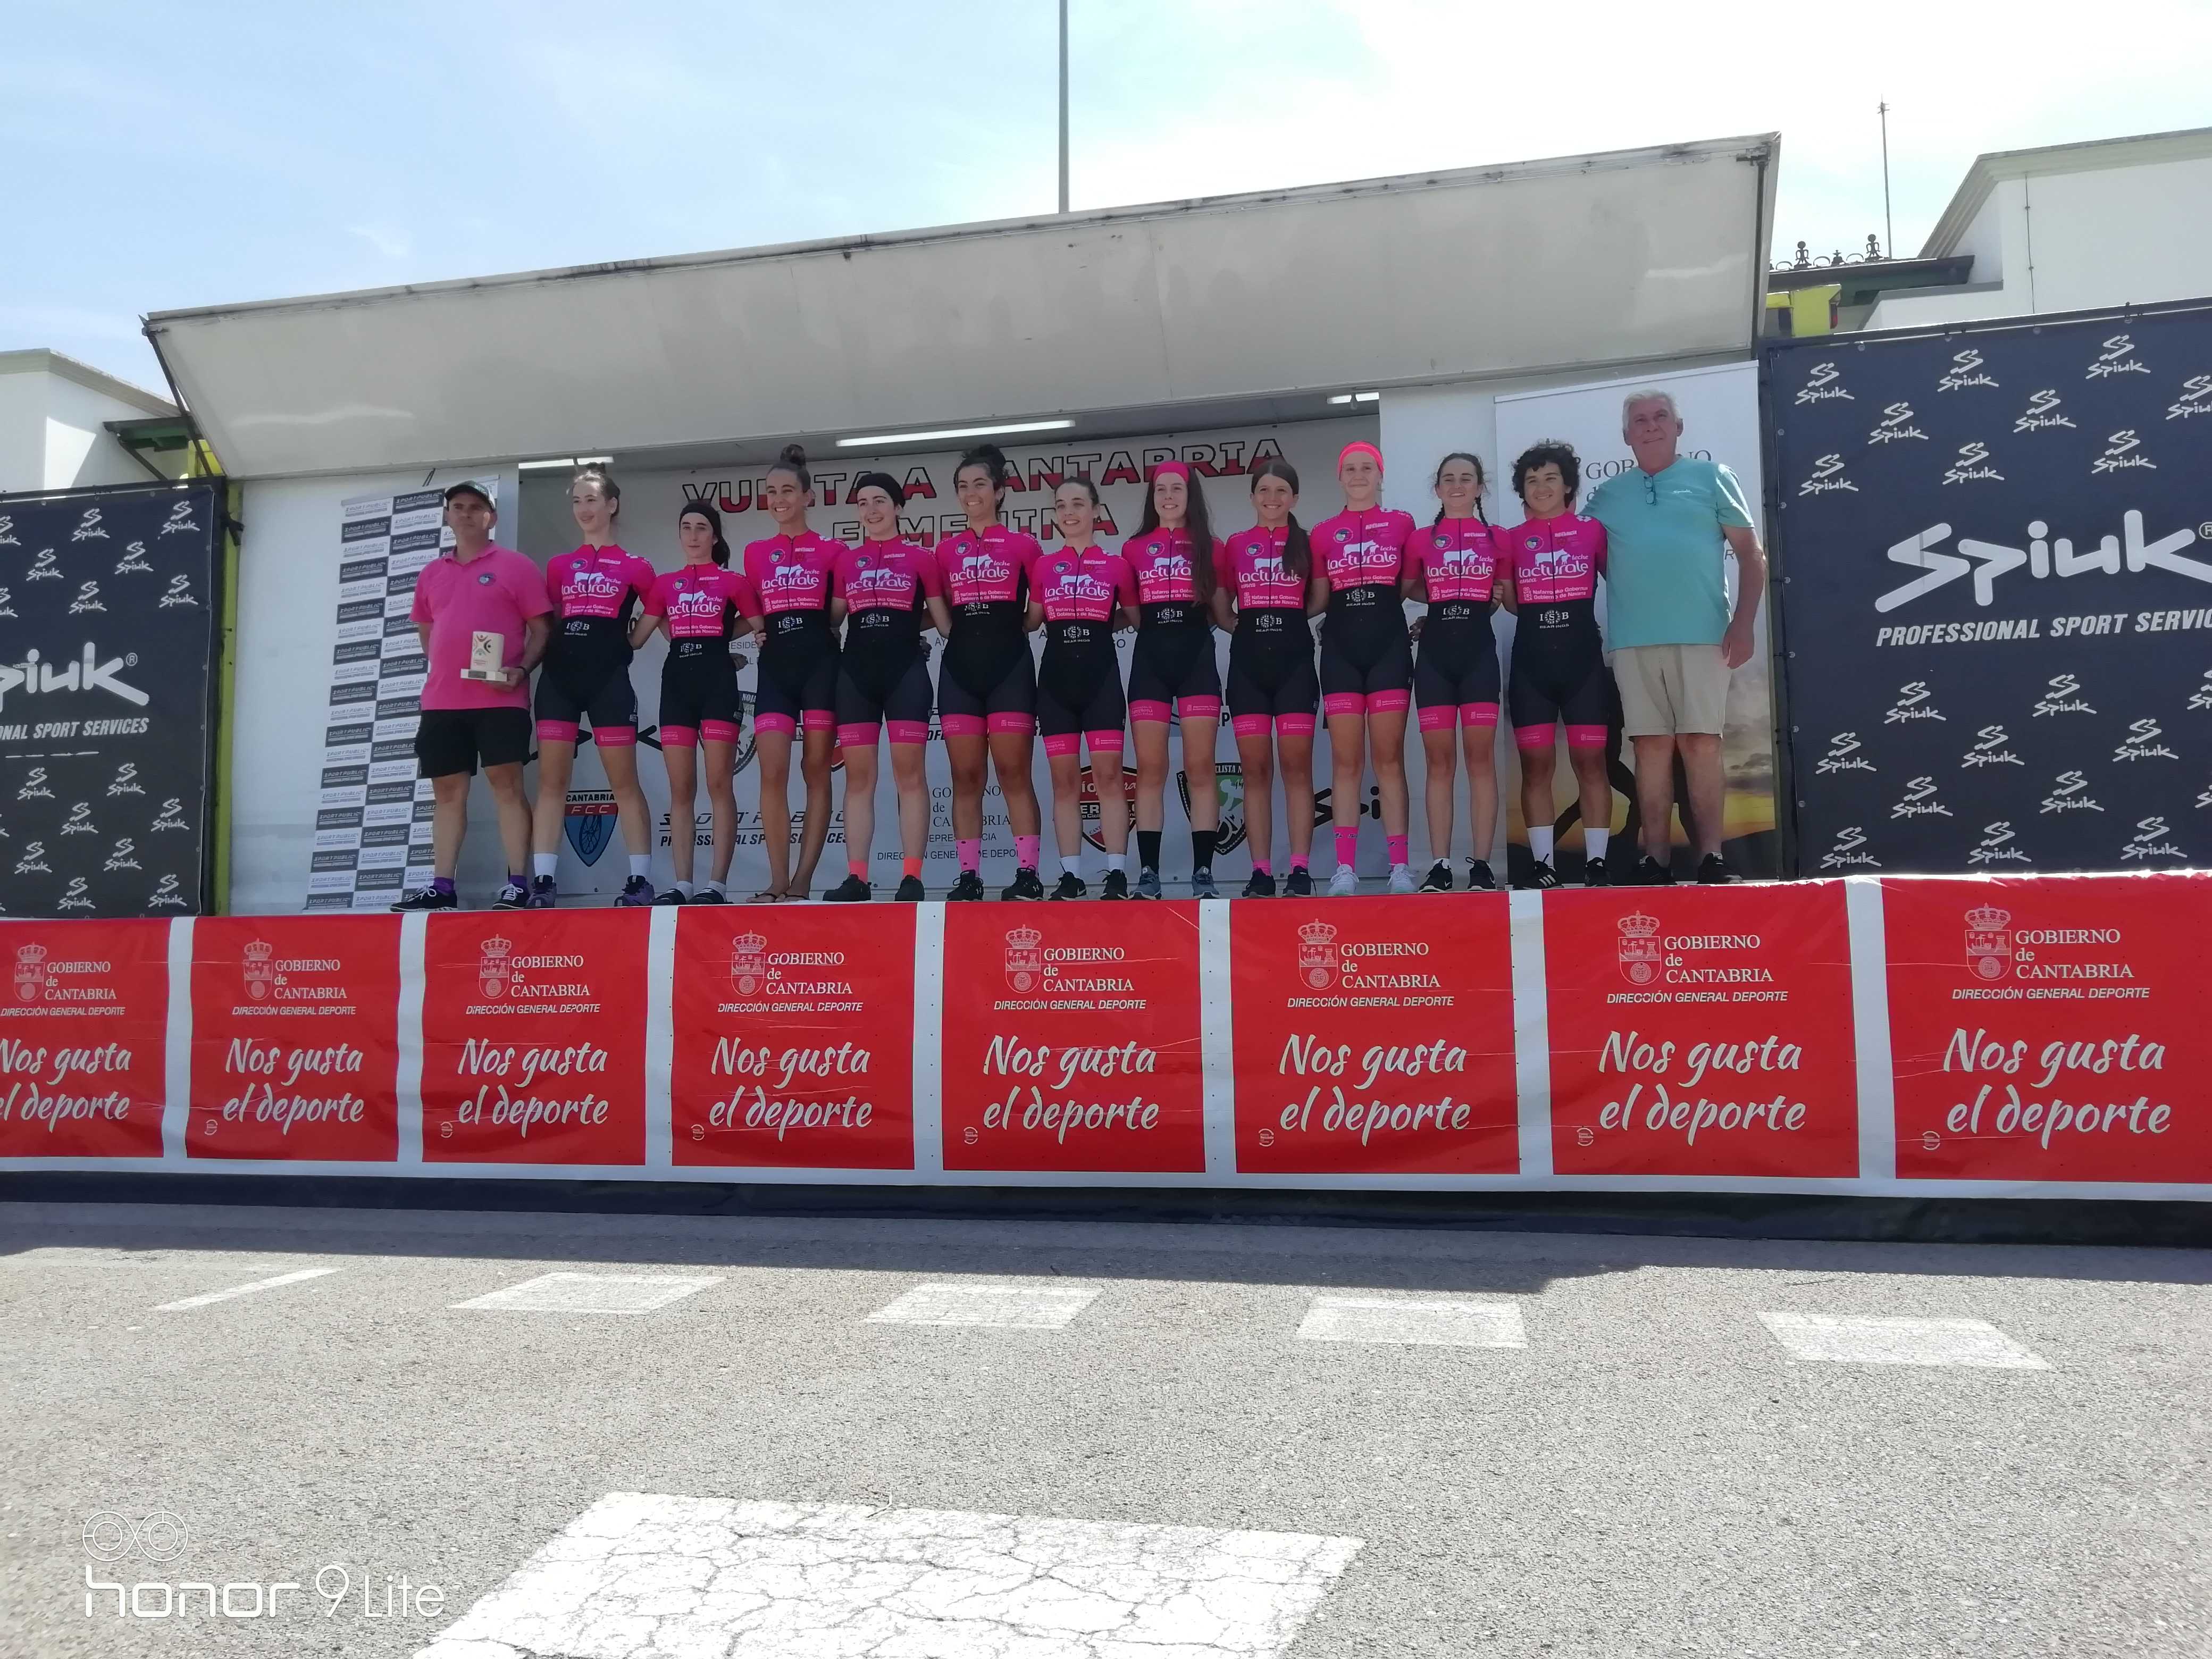 Paula Ostiz y Laura Ruiz vencen con brillantez en la Vuelta a Cantabria Femenina